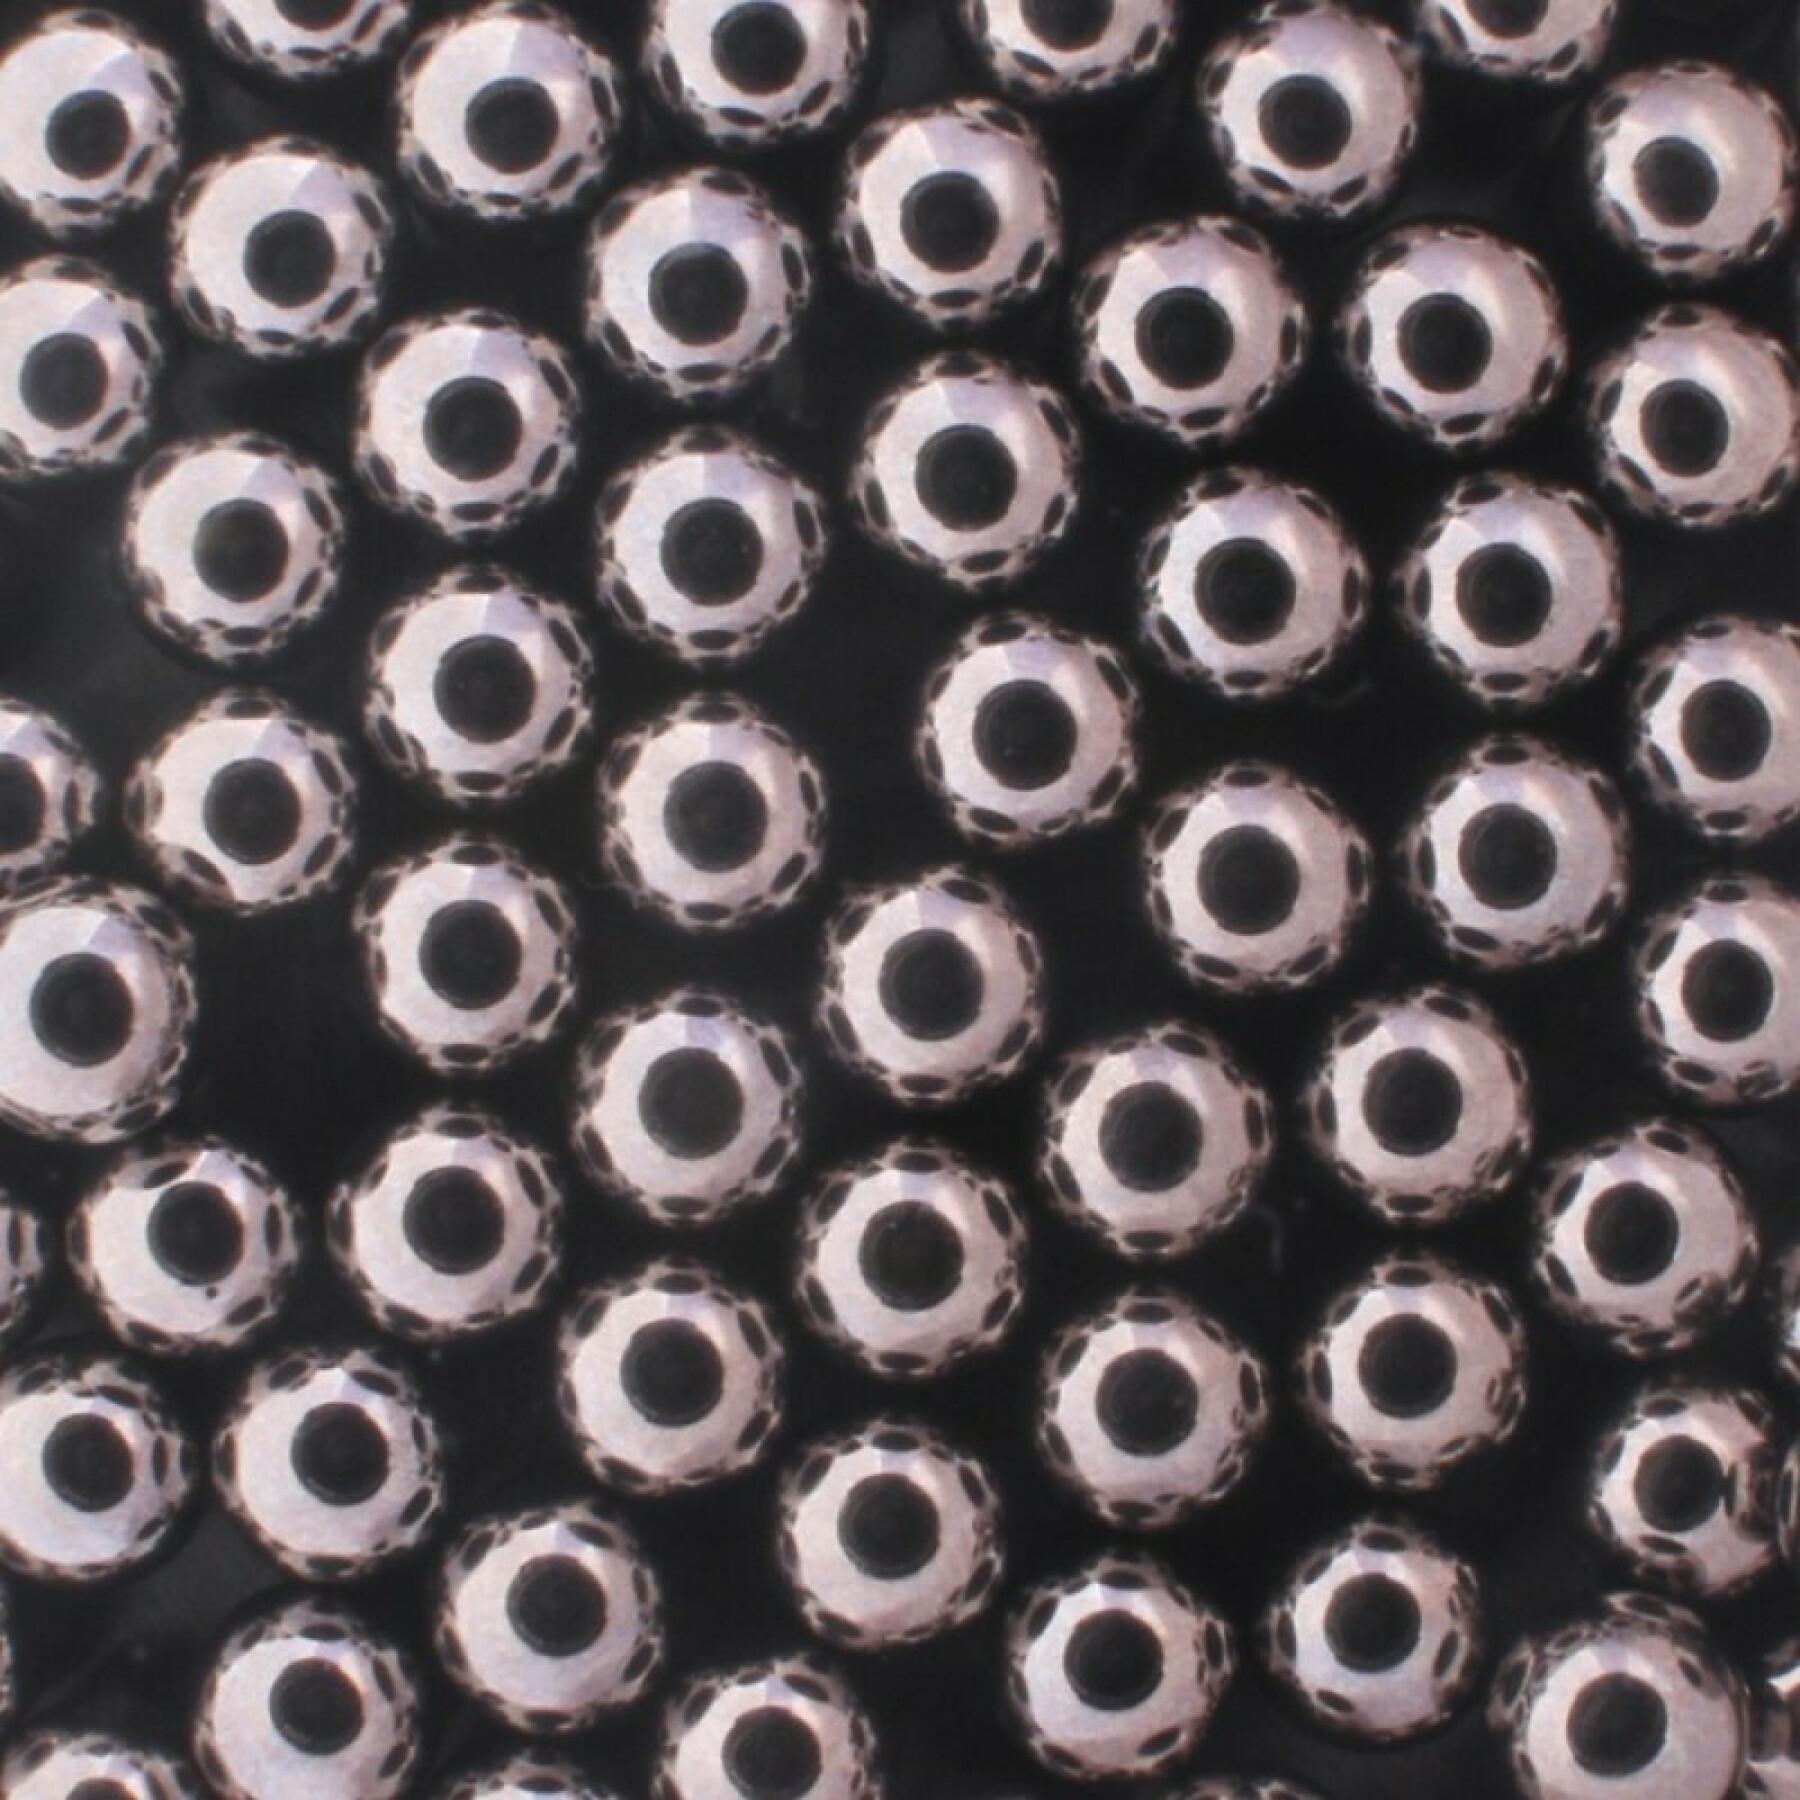 Rollkugeln Enduro Bearings Grade 25 Chromium Steel 1/8 3,175 mm (x100)